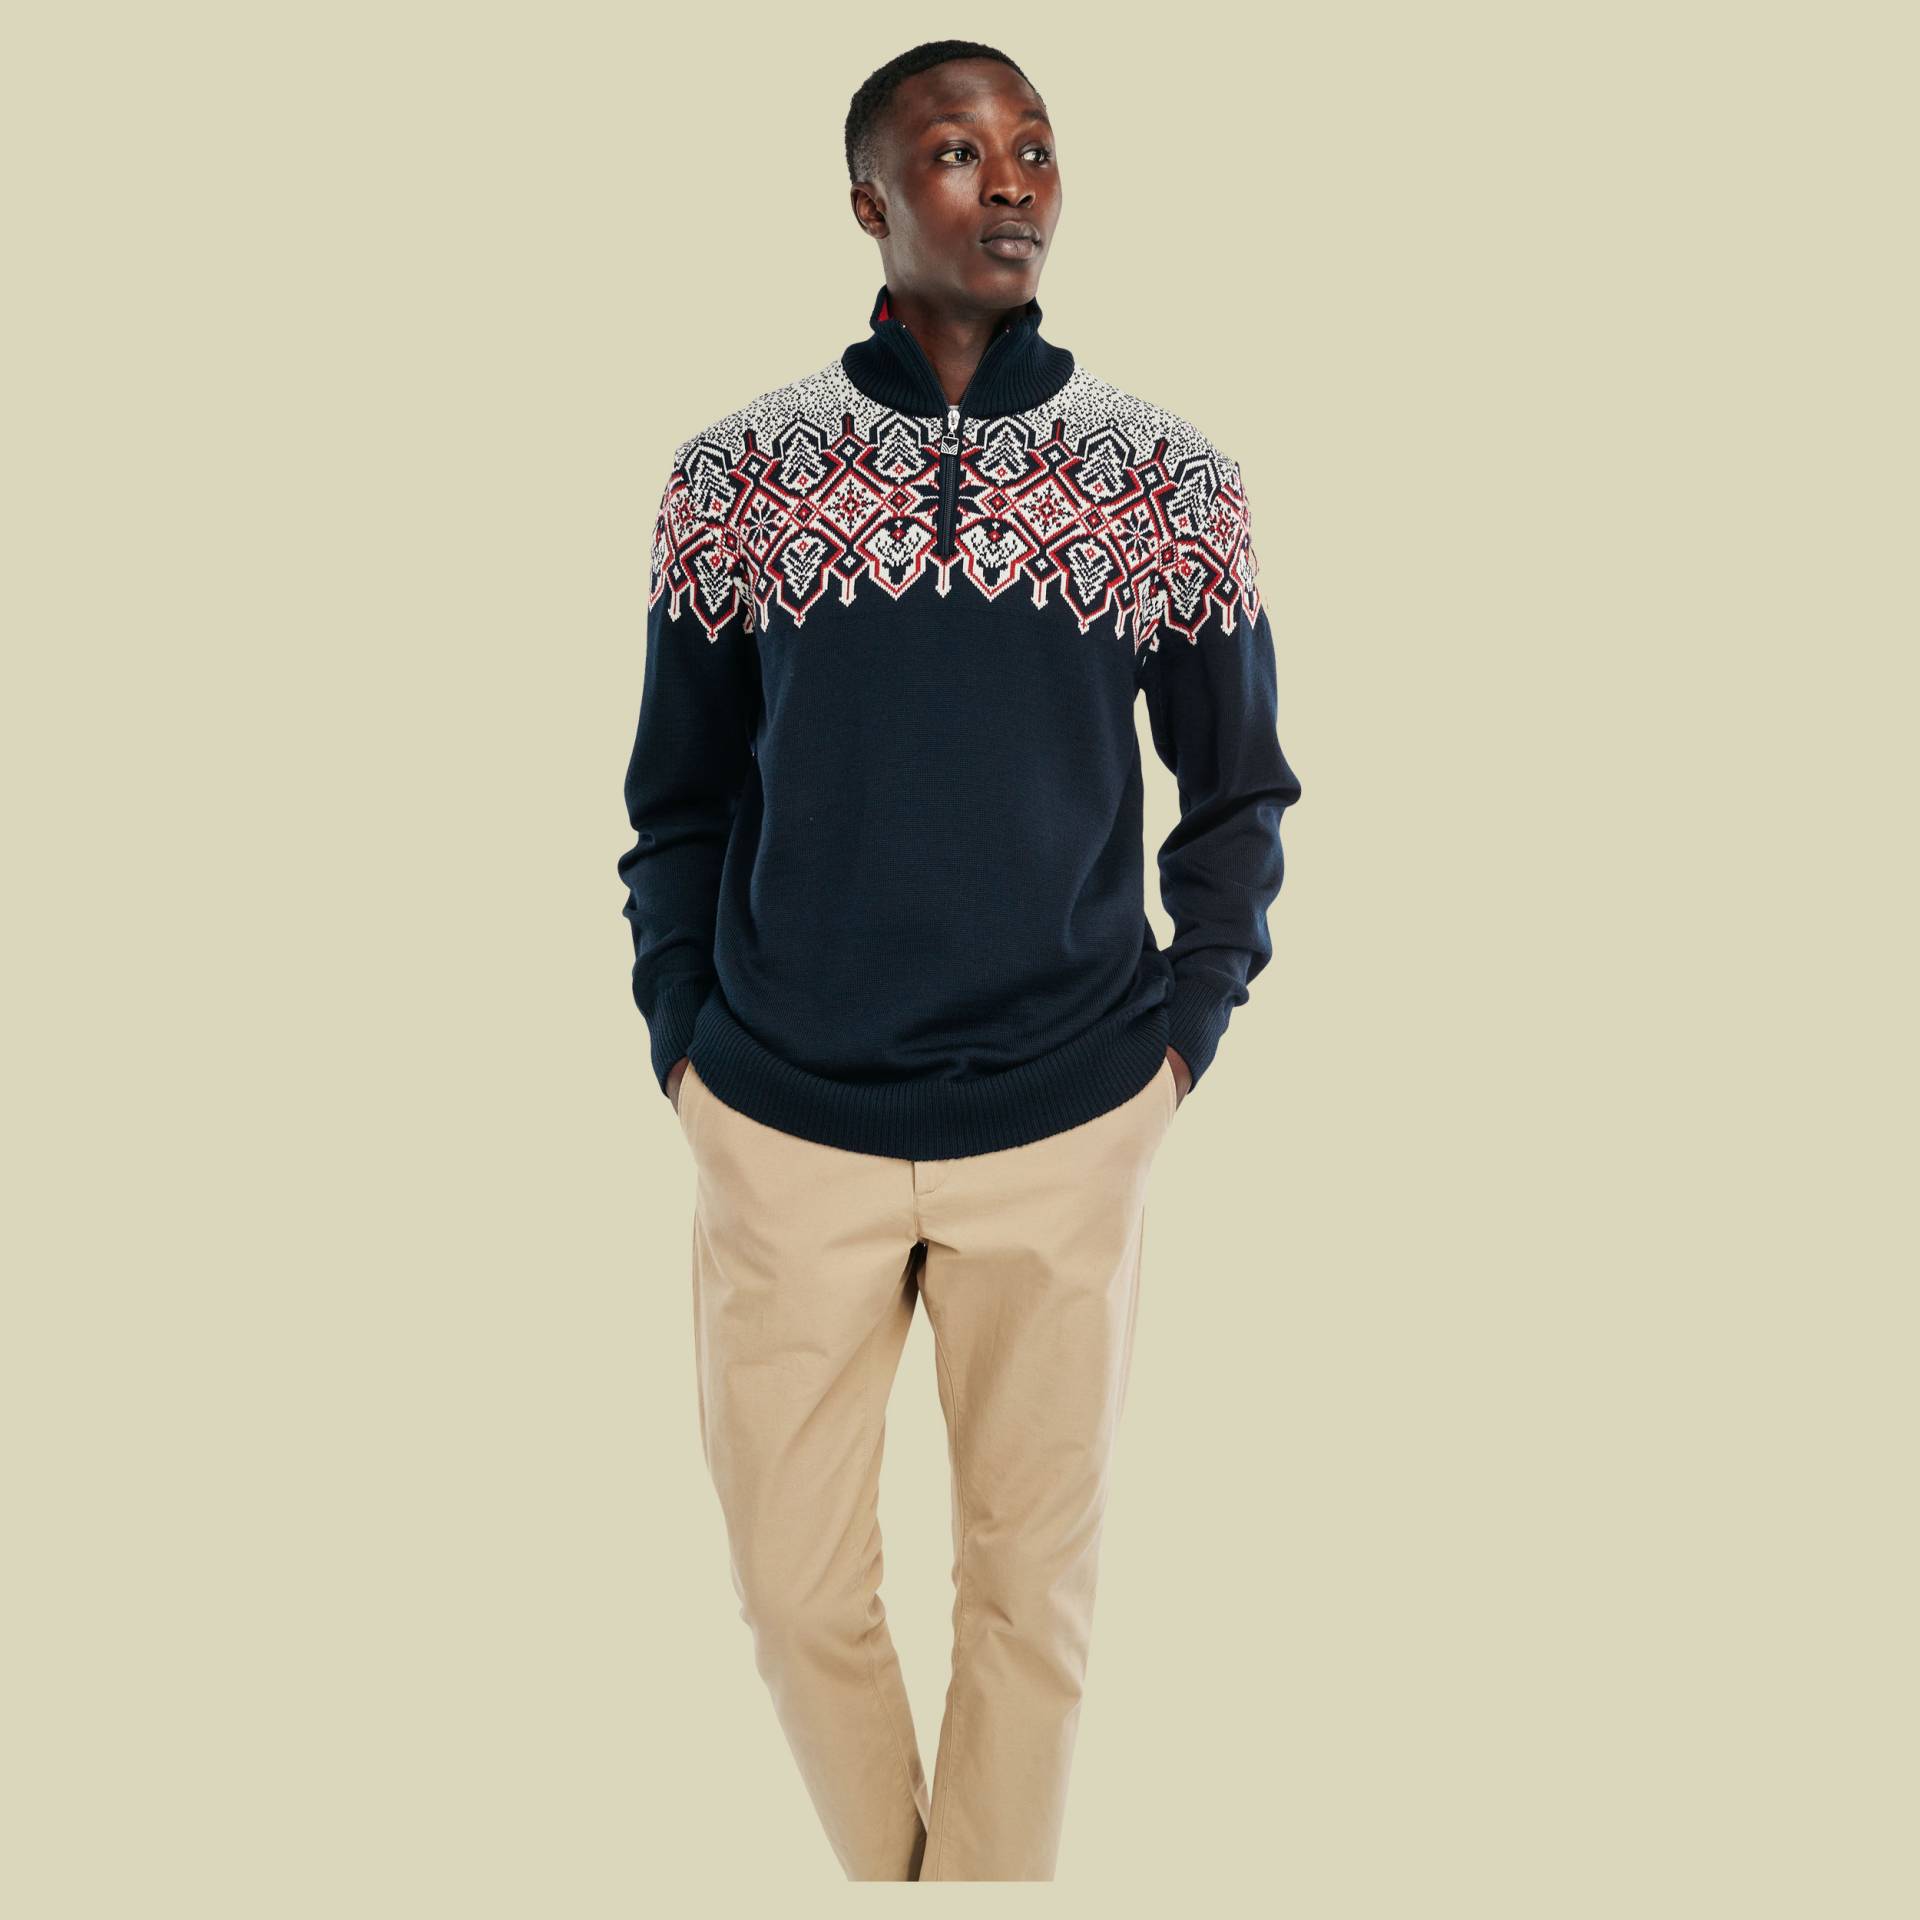 Winterland Sweater Men Größe S Farbe navy-off white-raspberry von Dale of Norway